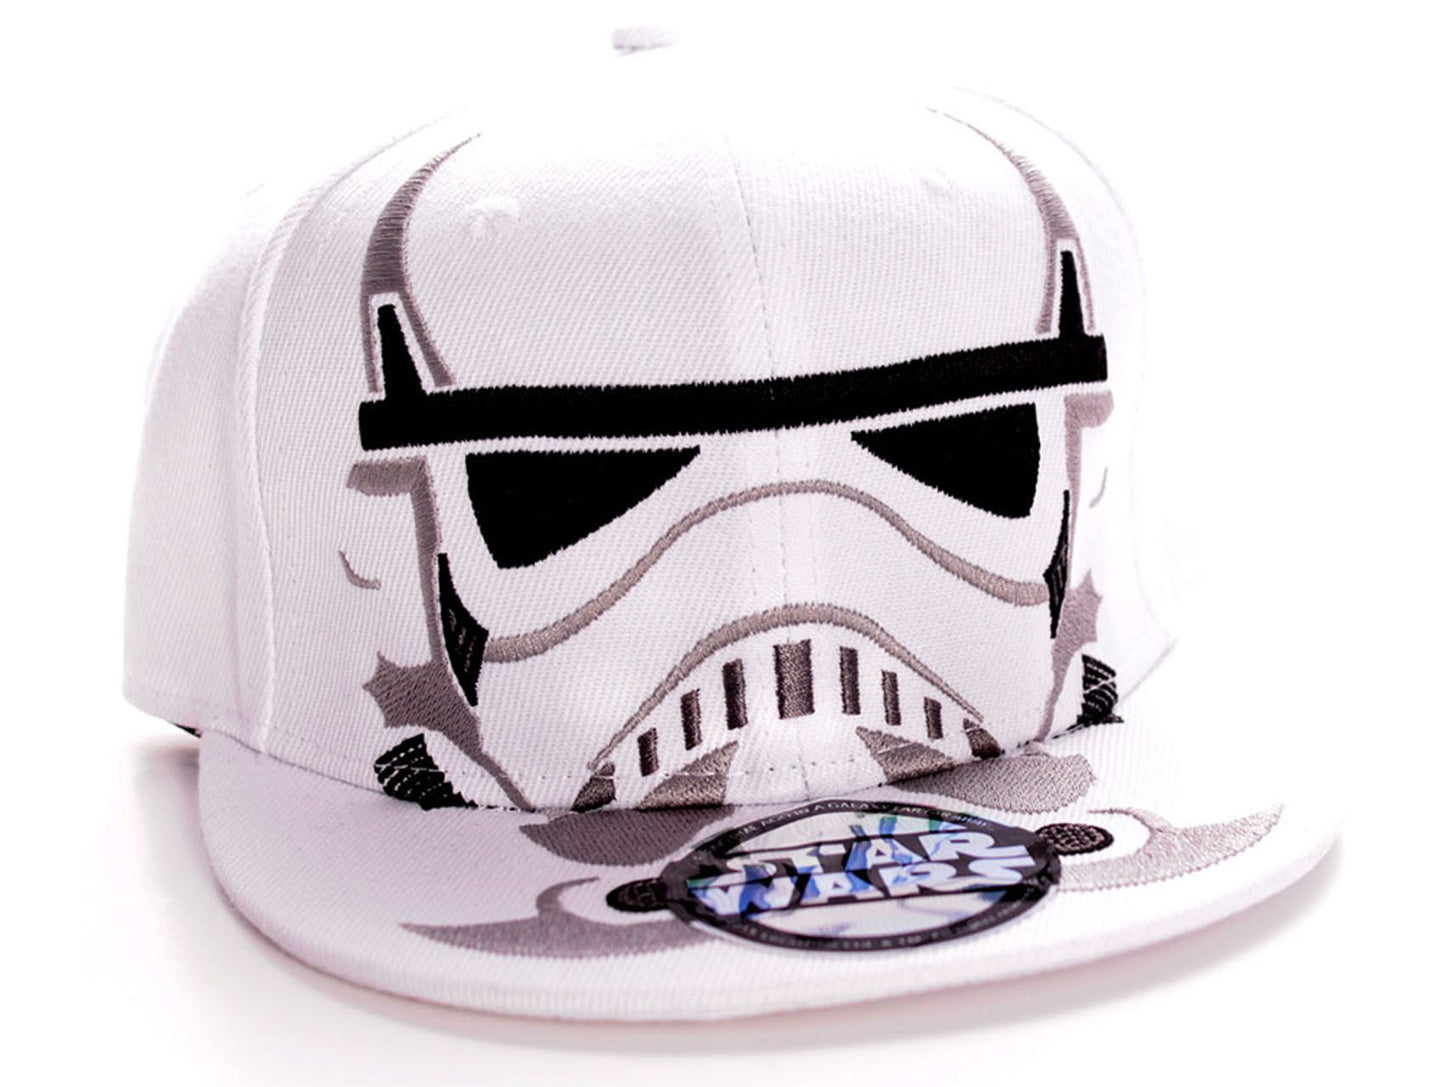 Star Wars Cap - Stormtrooper's Helmet